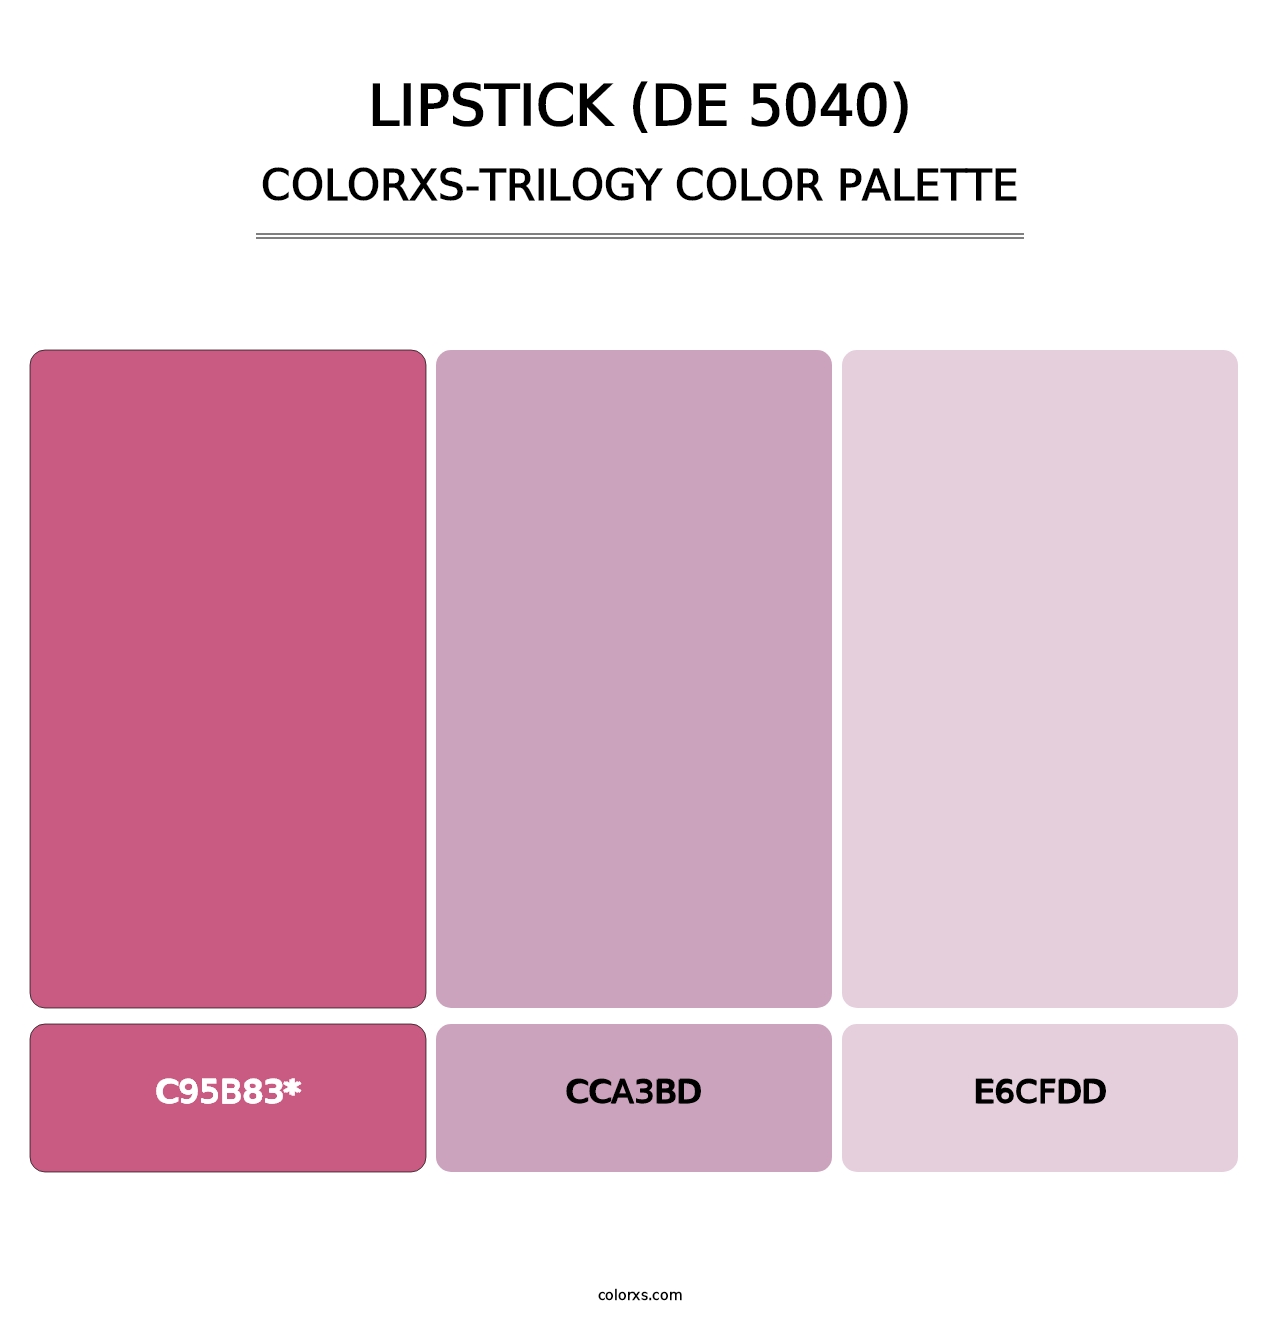 Lipstick (DE 5040) - Colorxs Trilogy Palette